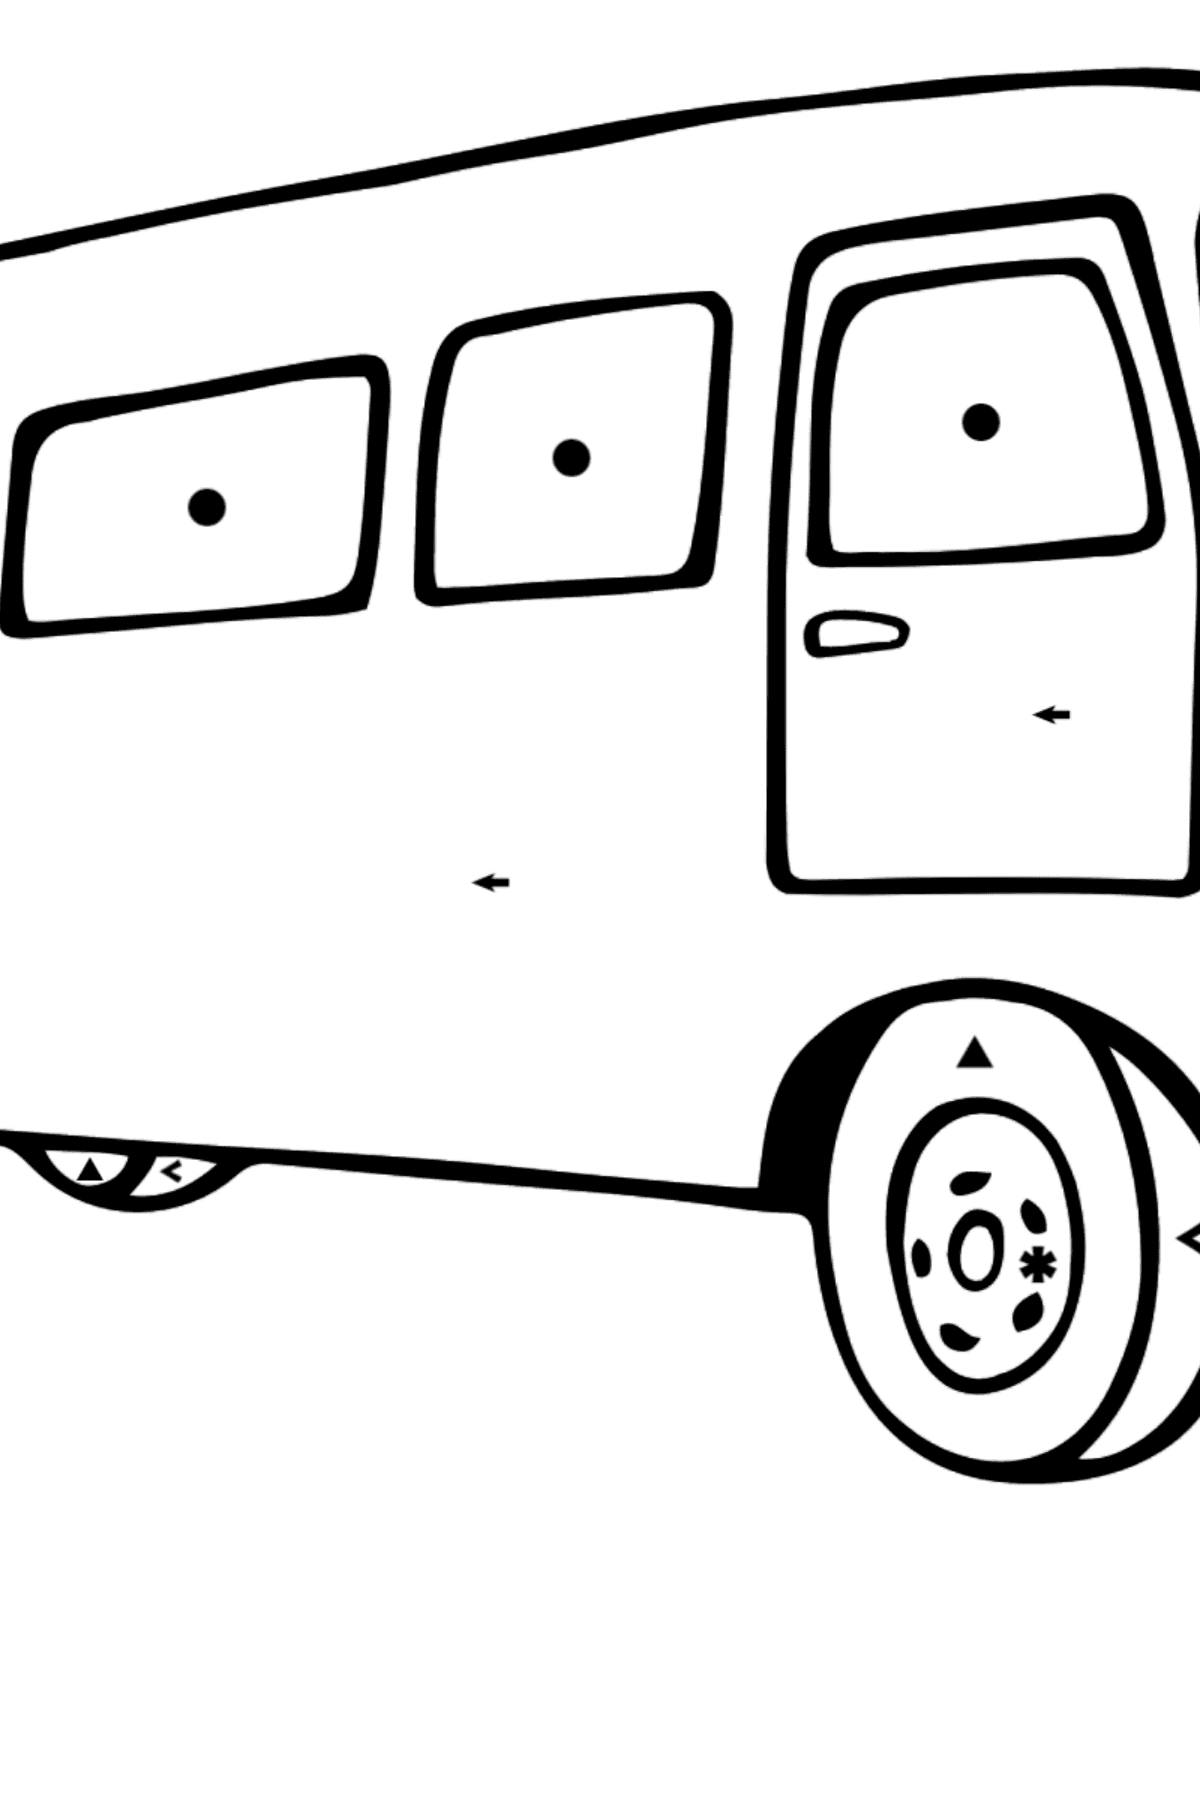 Tegning til fargelegging busspassasjer - Fargelegge etter symboler for barn